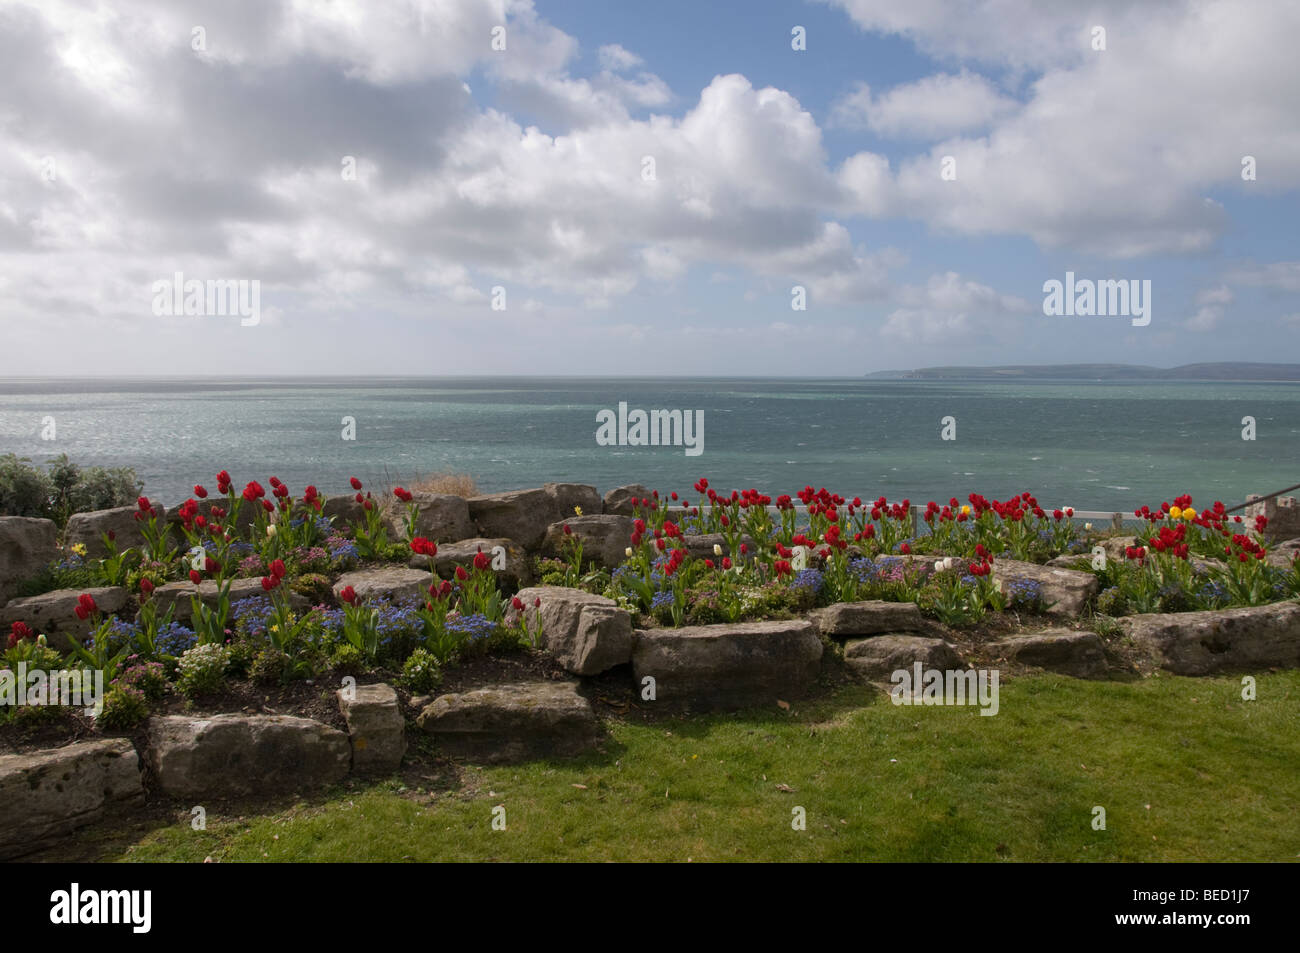 Un acantilado, jardín de flores municipal en Bournemouth, una rocalla con tulipanes rojos, con el mar y un cielo nublado. Foto de stock